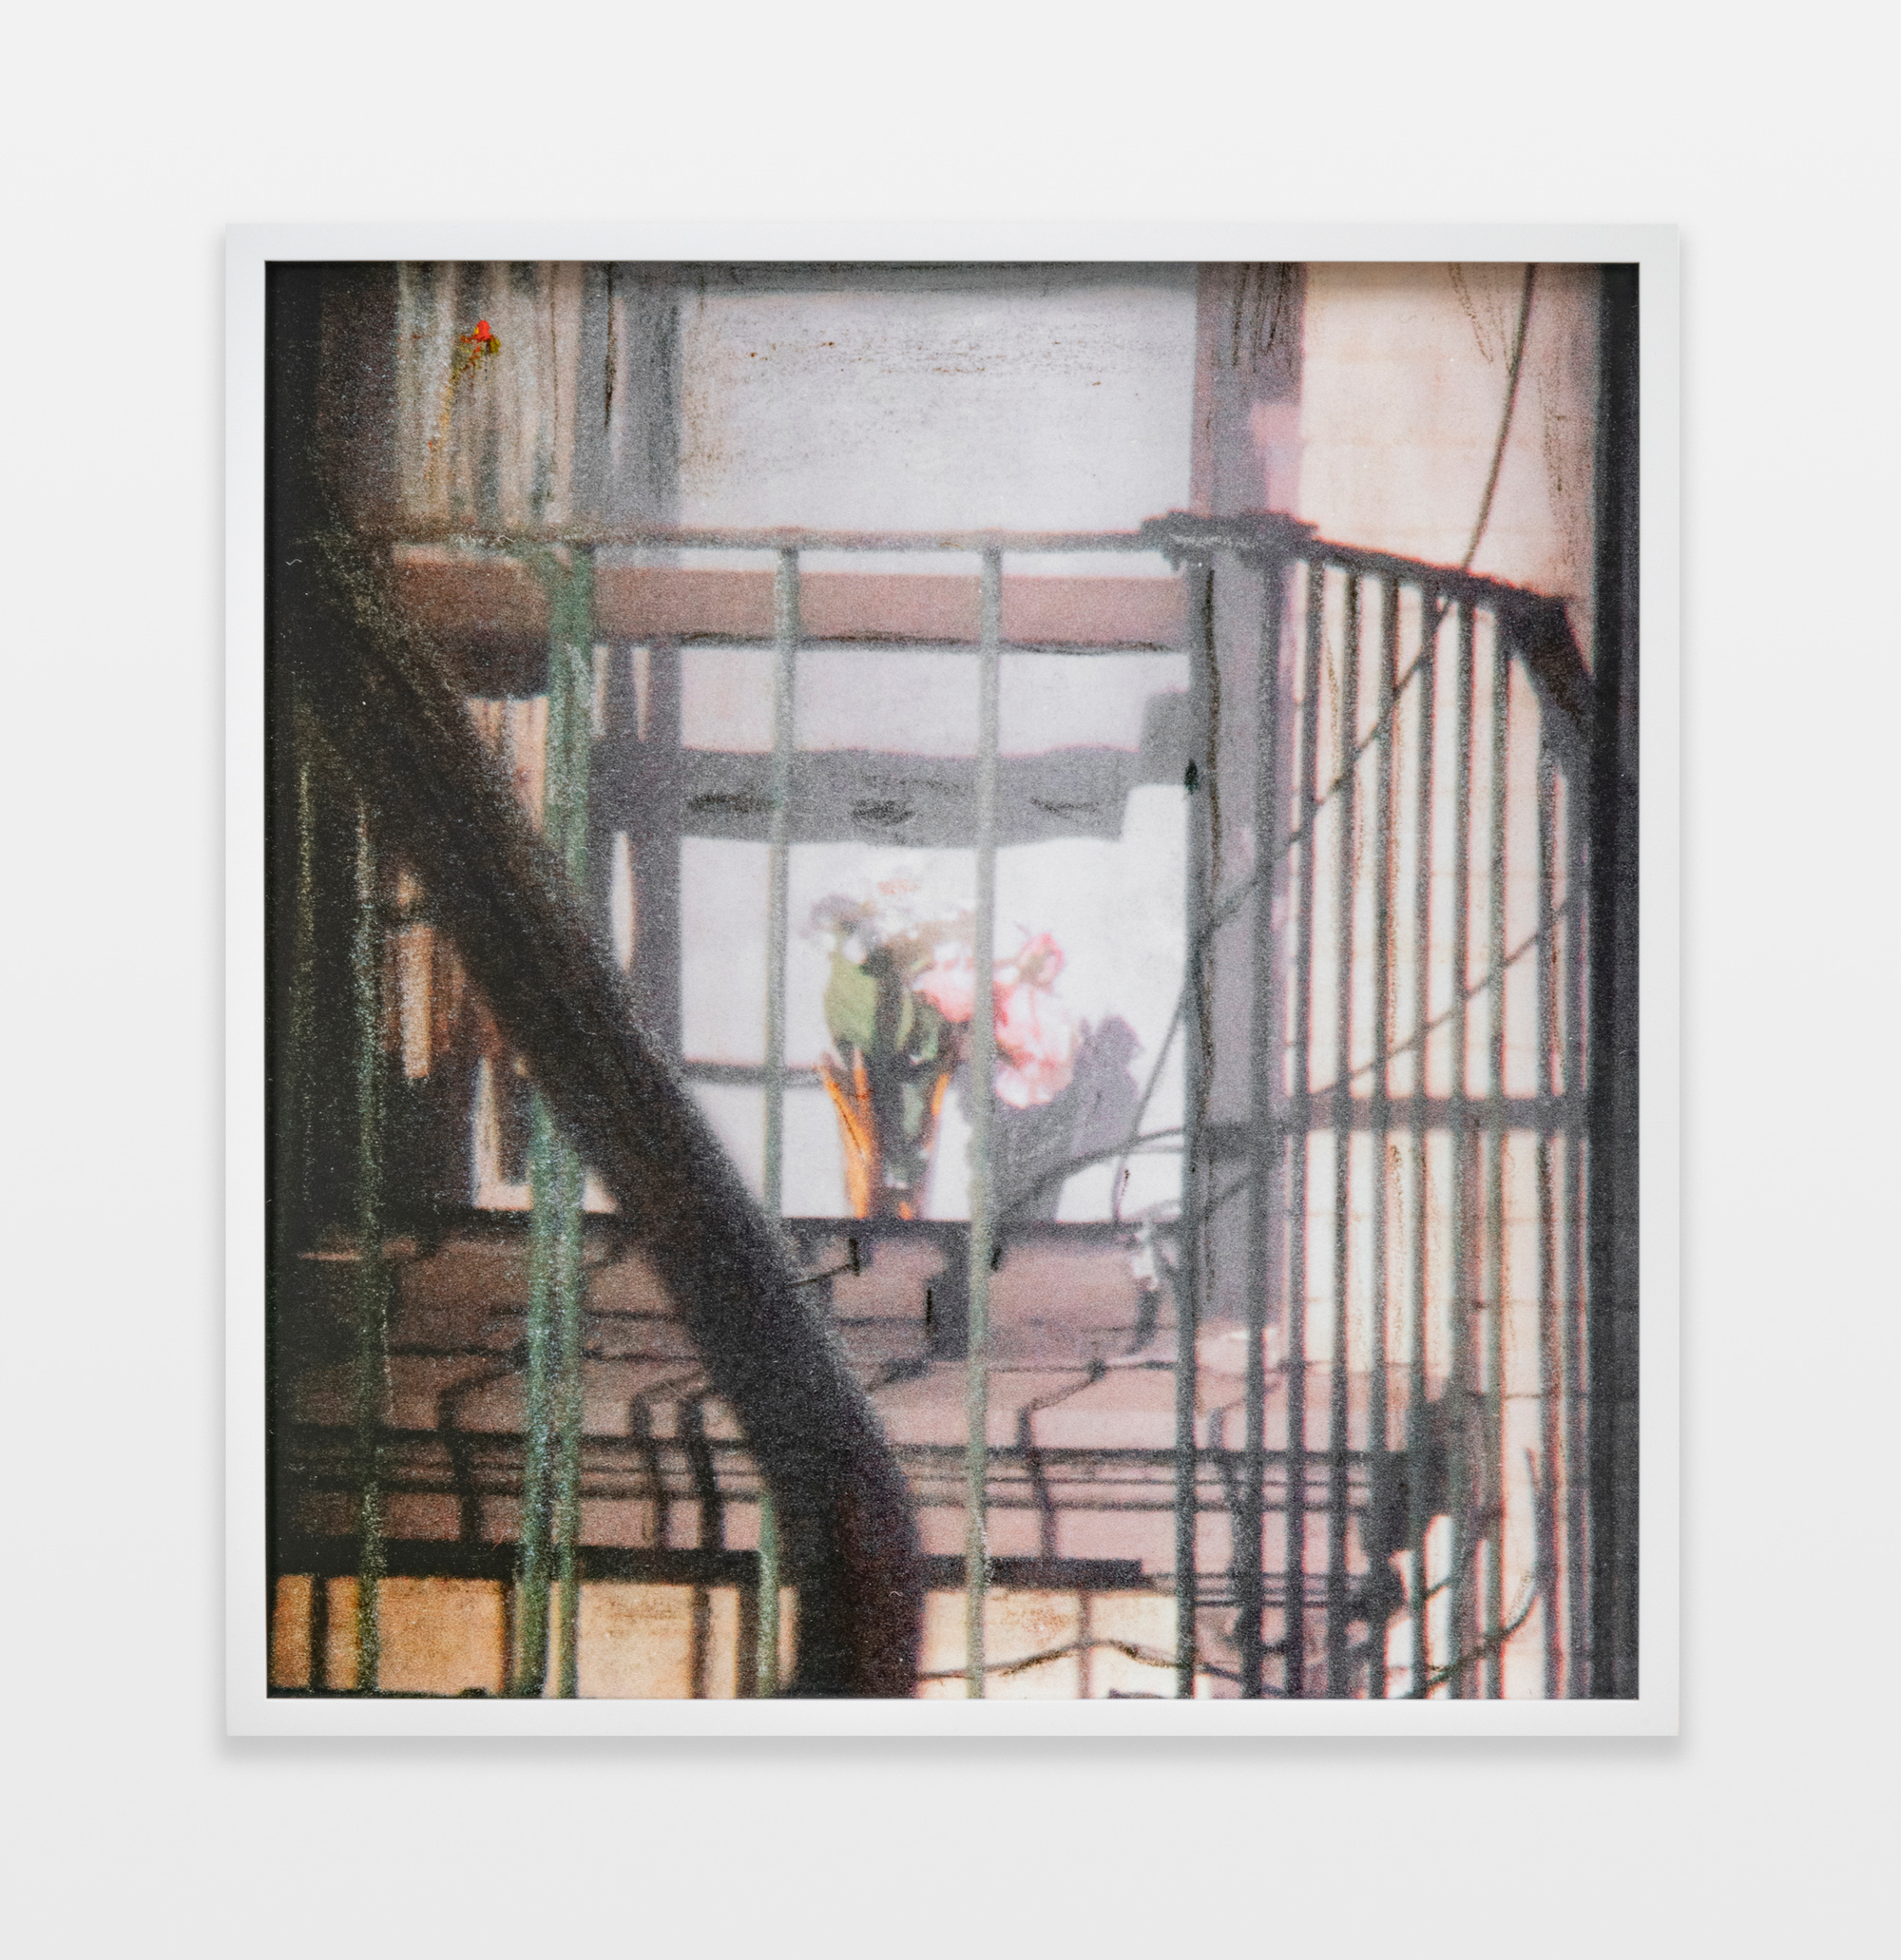 Barbara Ess, Fire Escape [Shut-In Series], 2018-2019, archival pigment print, 23.75h x 22.75w in.